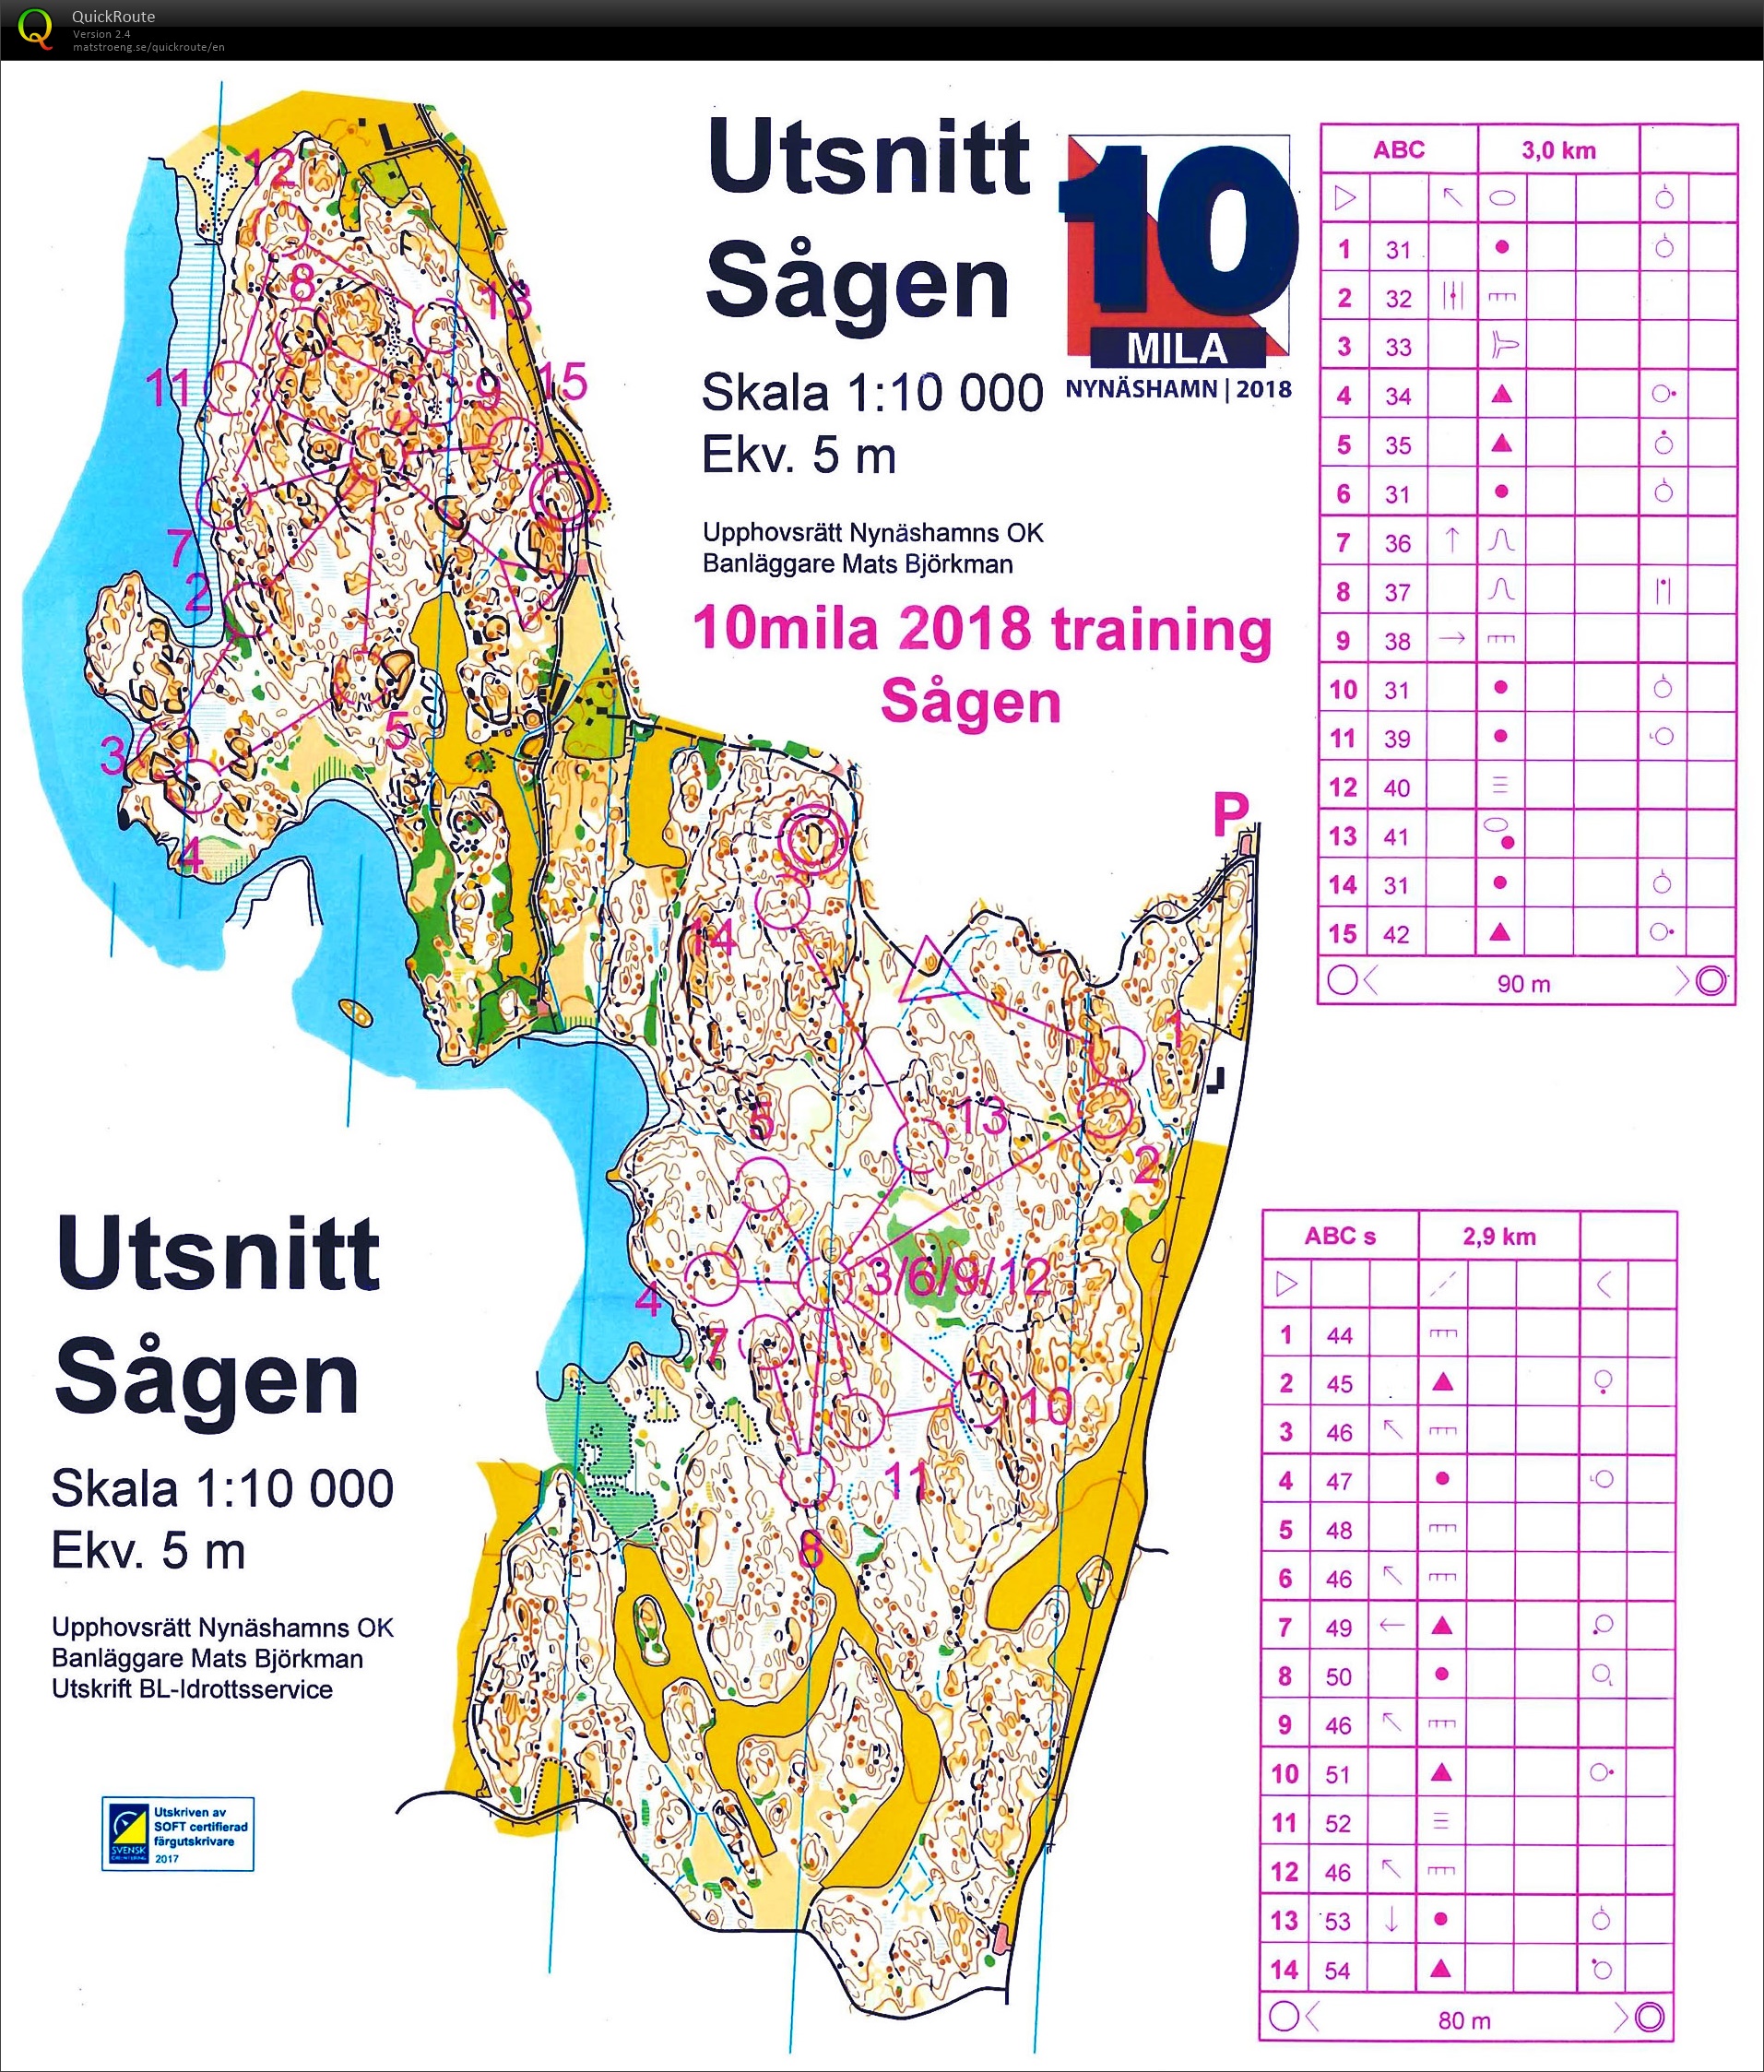 10mila training2 : Sågen (27/04/2018)